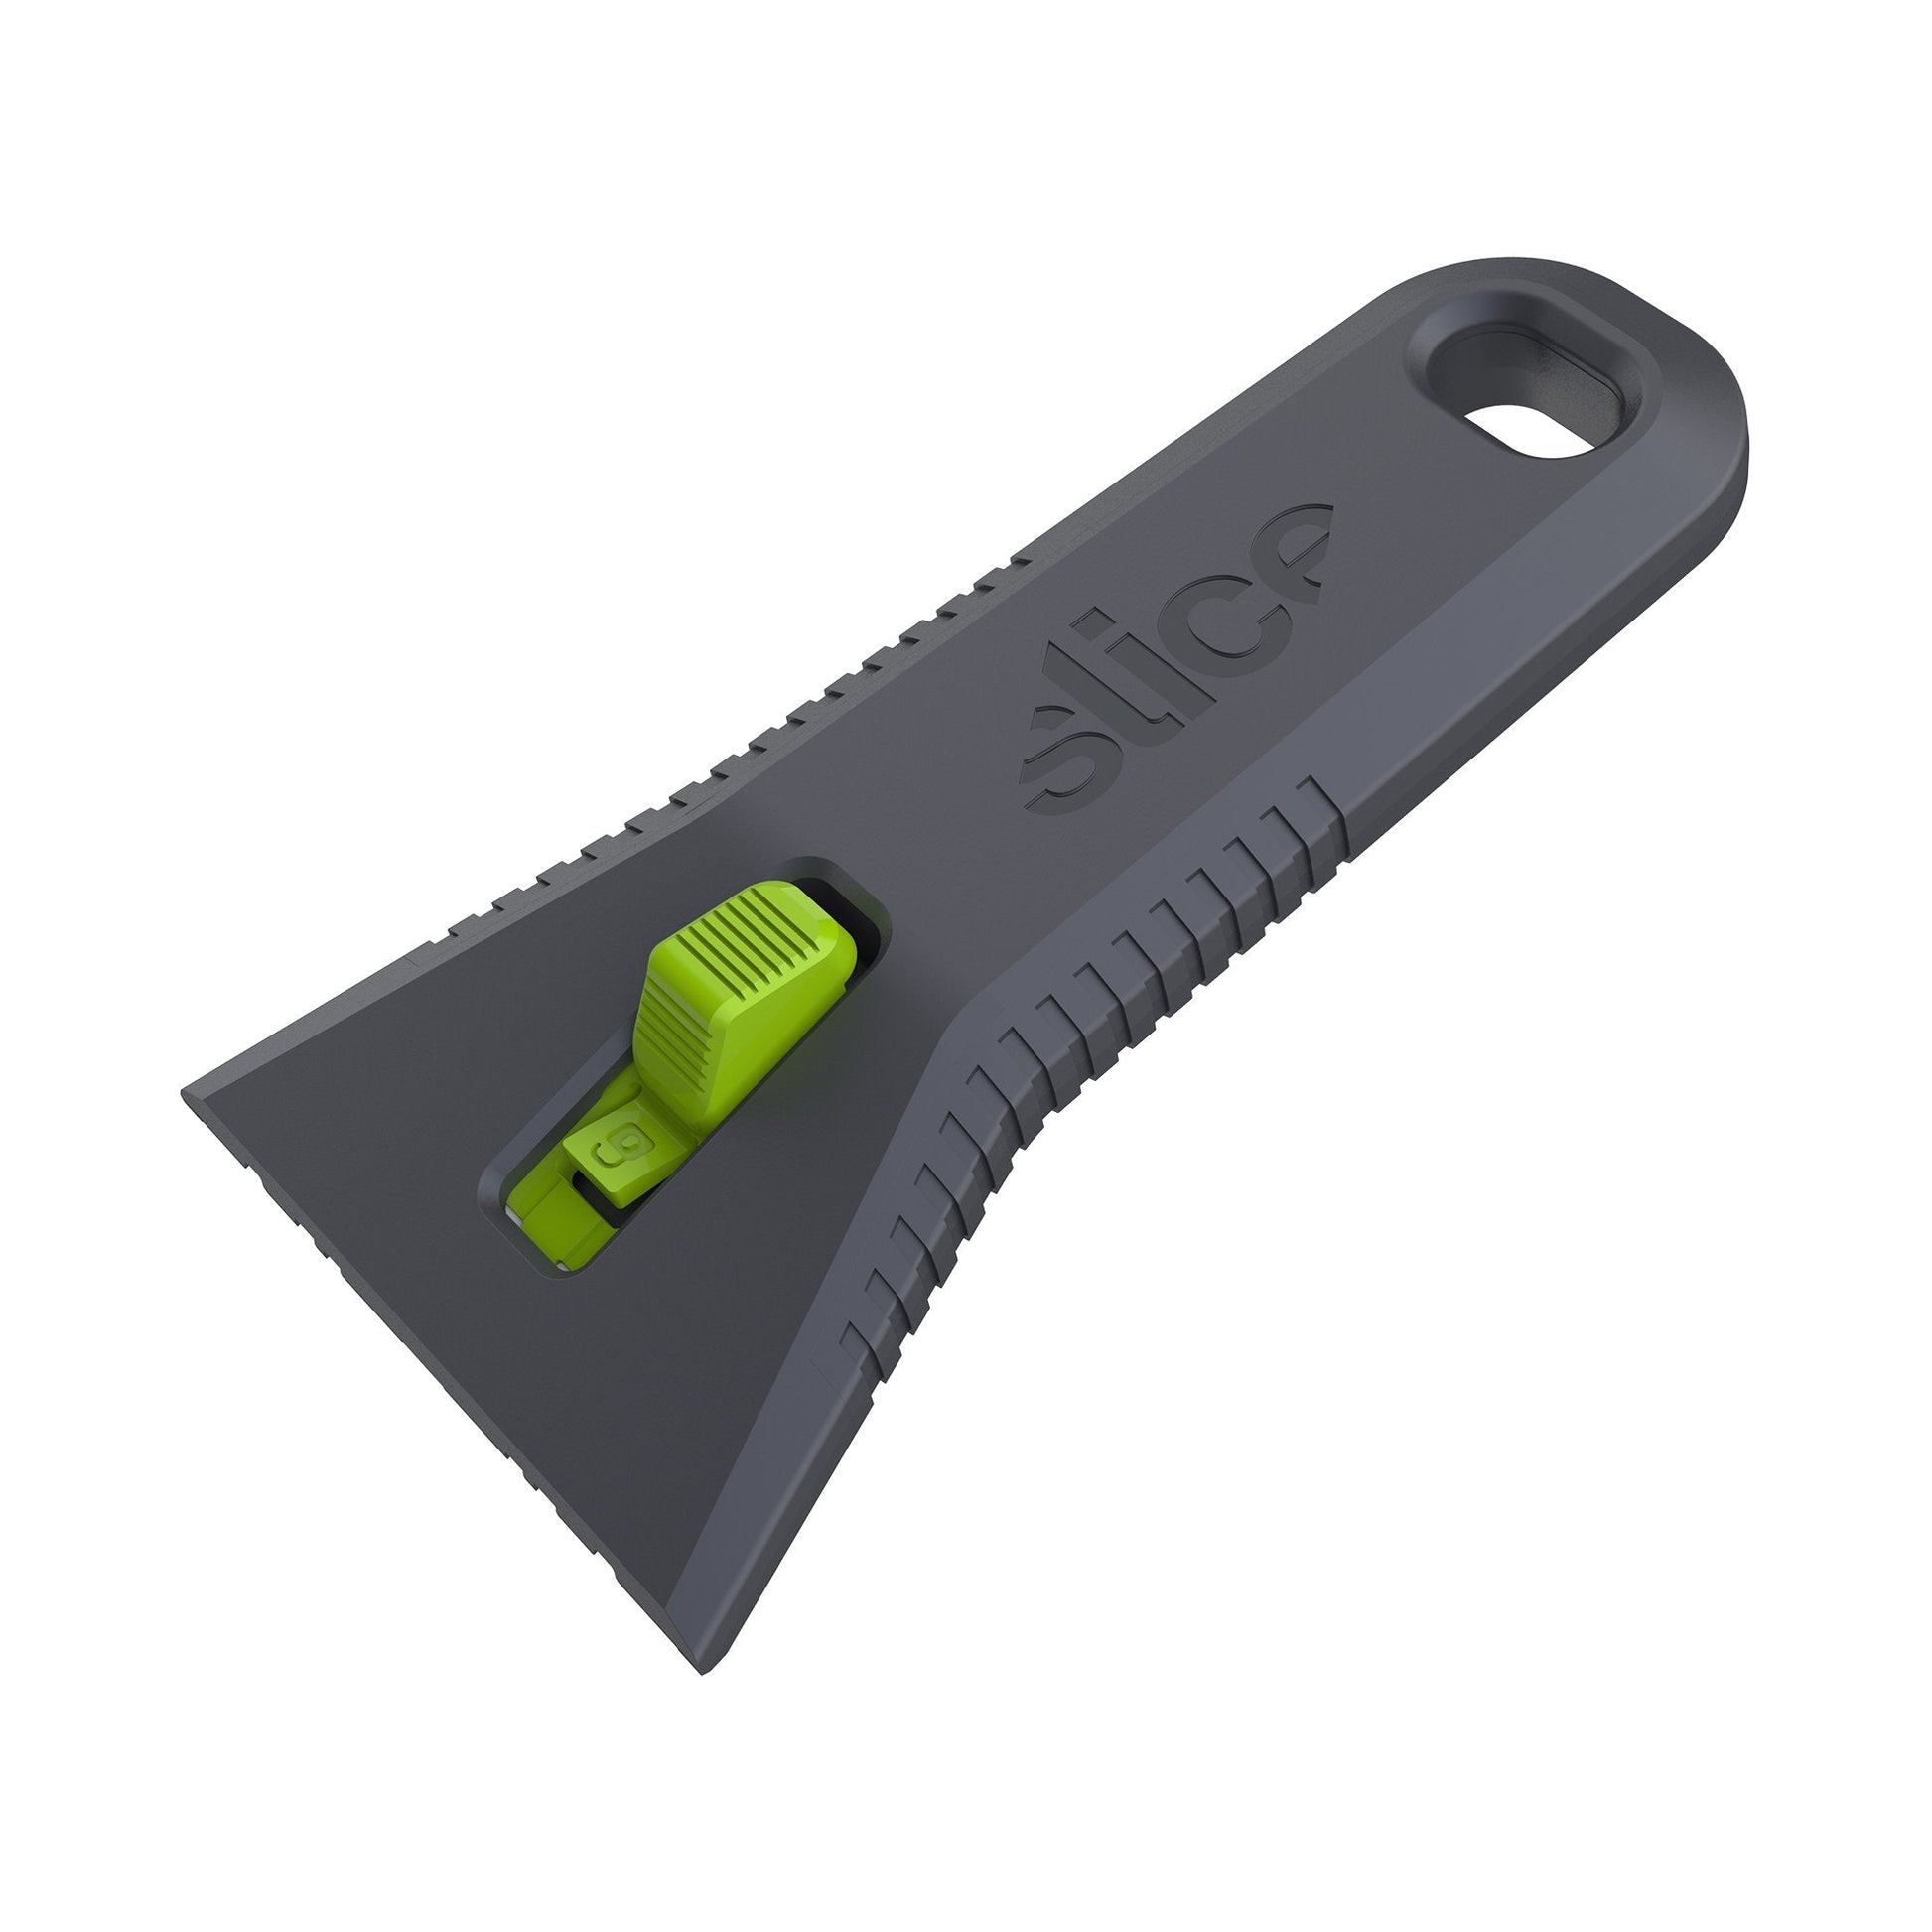 The Slice 10593 Auto-Retractable Utility Scraper